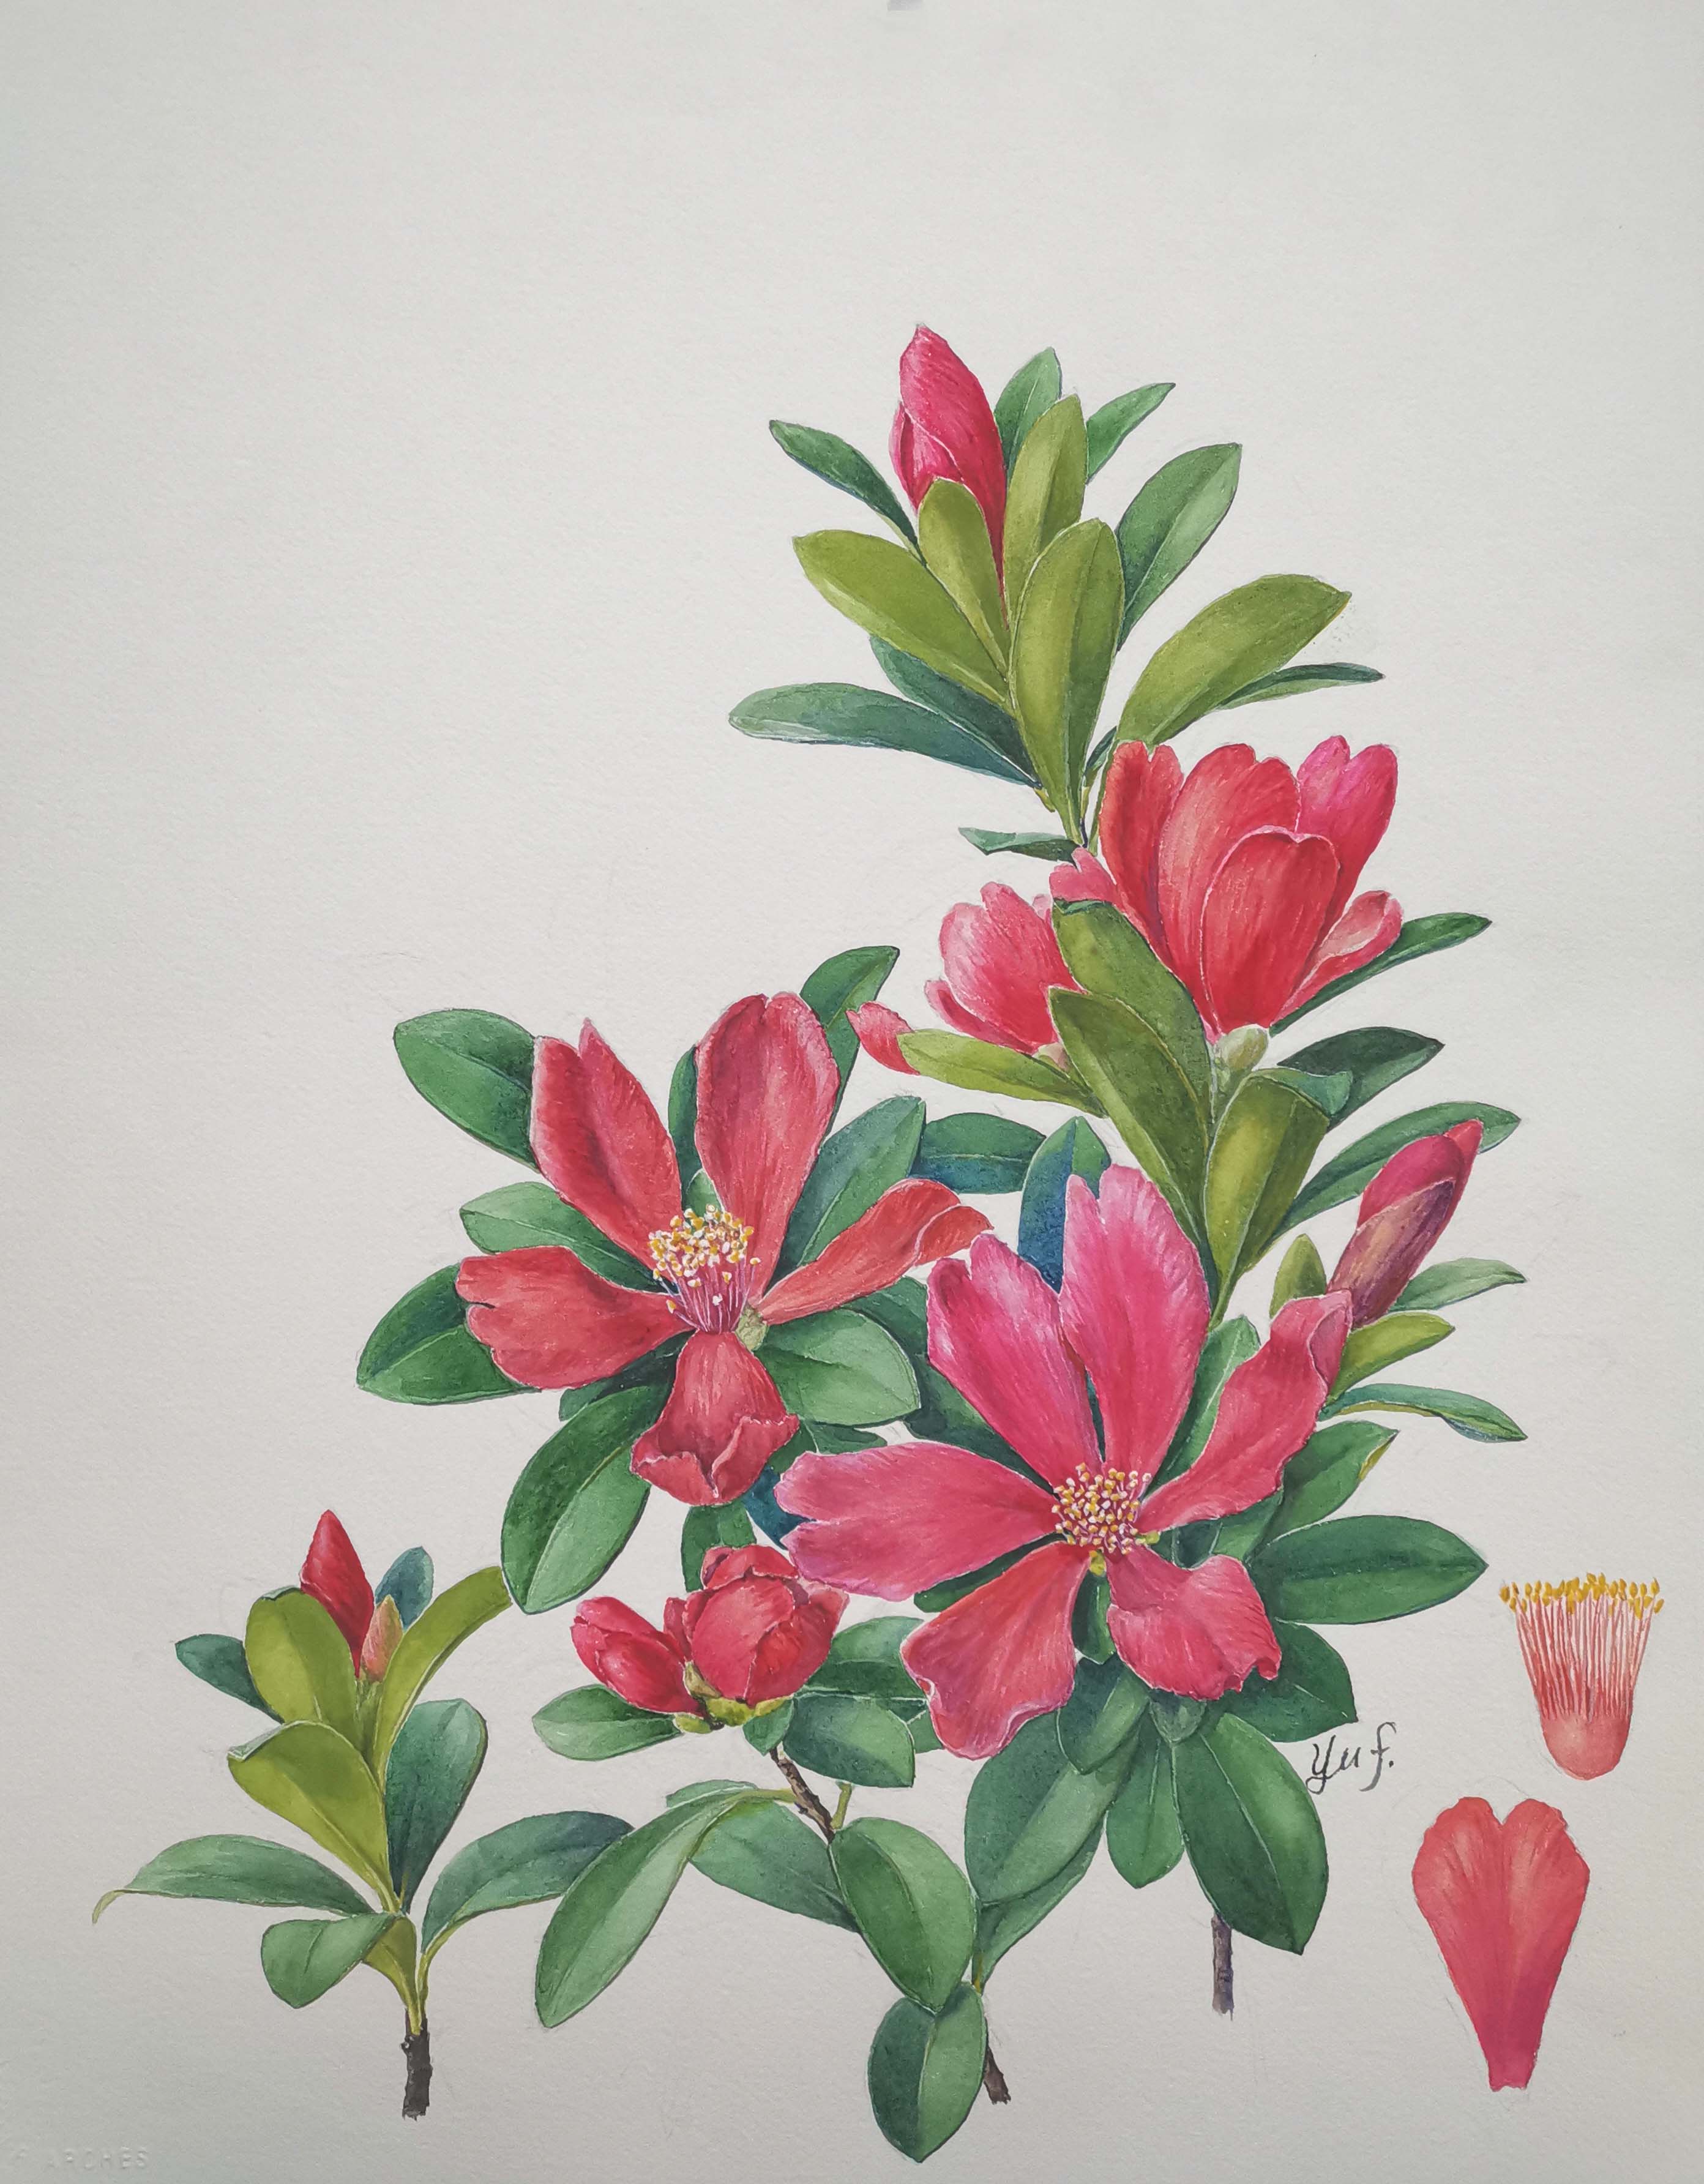 杜鵑紅山茶（Camellia azalea），國家一級保護植物。在廣東通常山茶科植物都在春節前后開花，而杜鵑紅山茶卻不畏寒暑地全年開花，故也有人稱它為“四季紅山茶”。圖片來源：中國科學院華南植物園植物科學畫畫師余峰